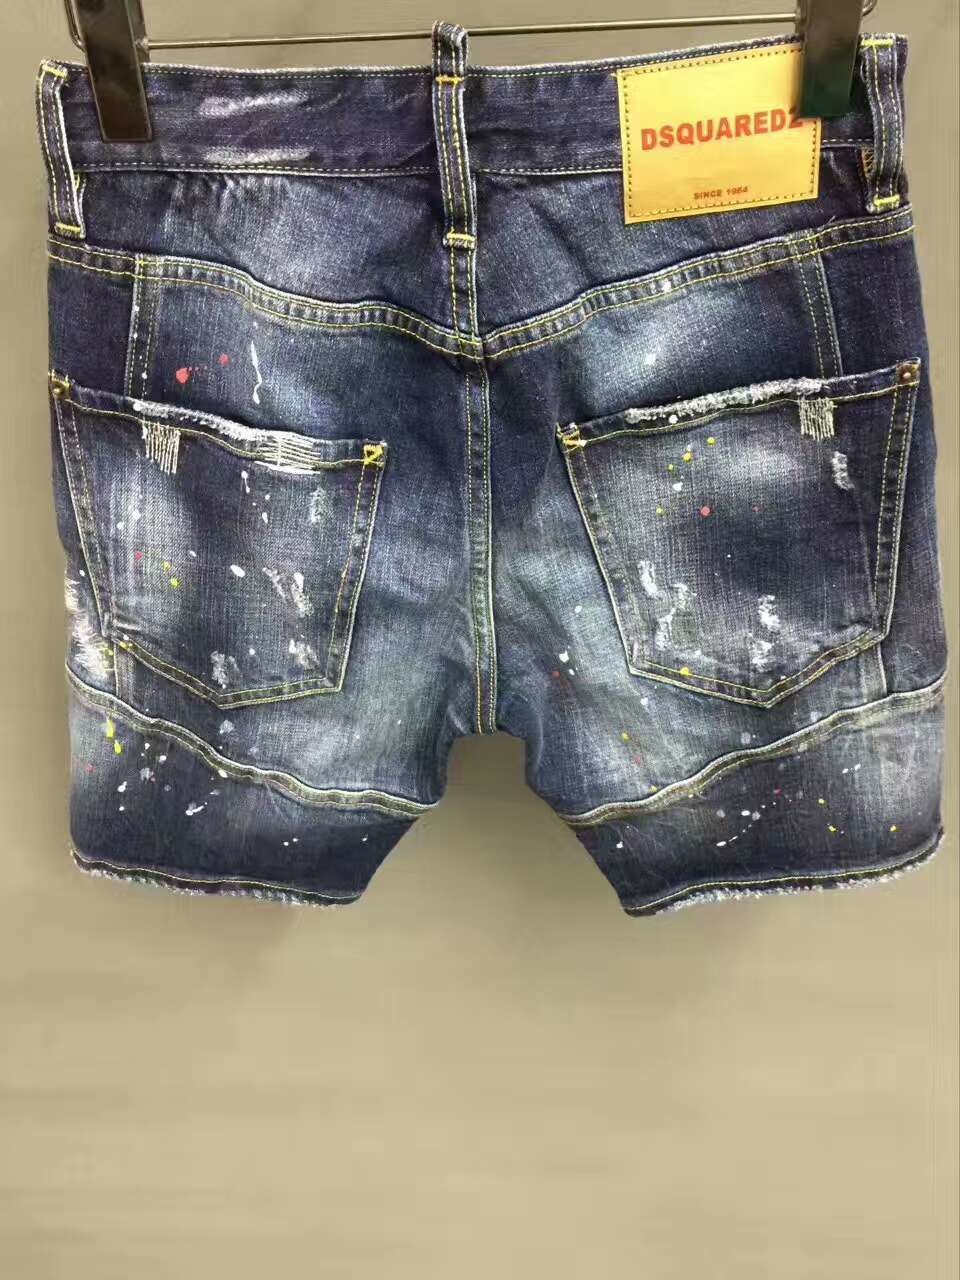 dsquared2 short jeans 2017